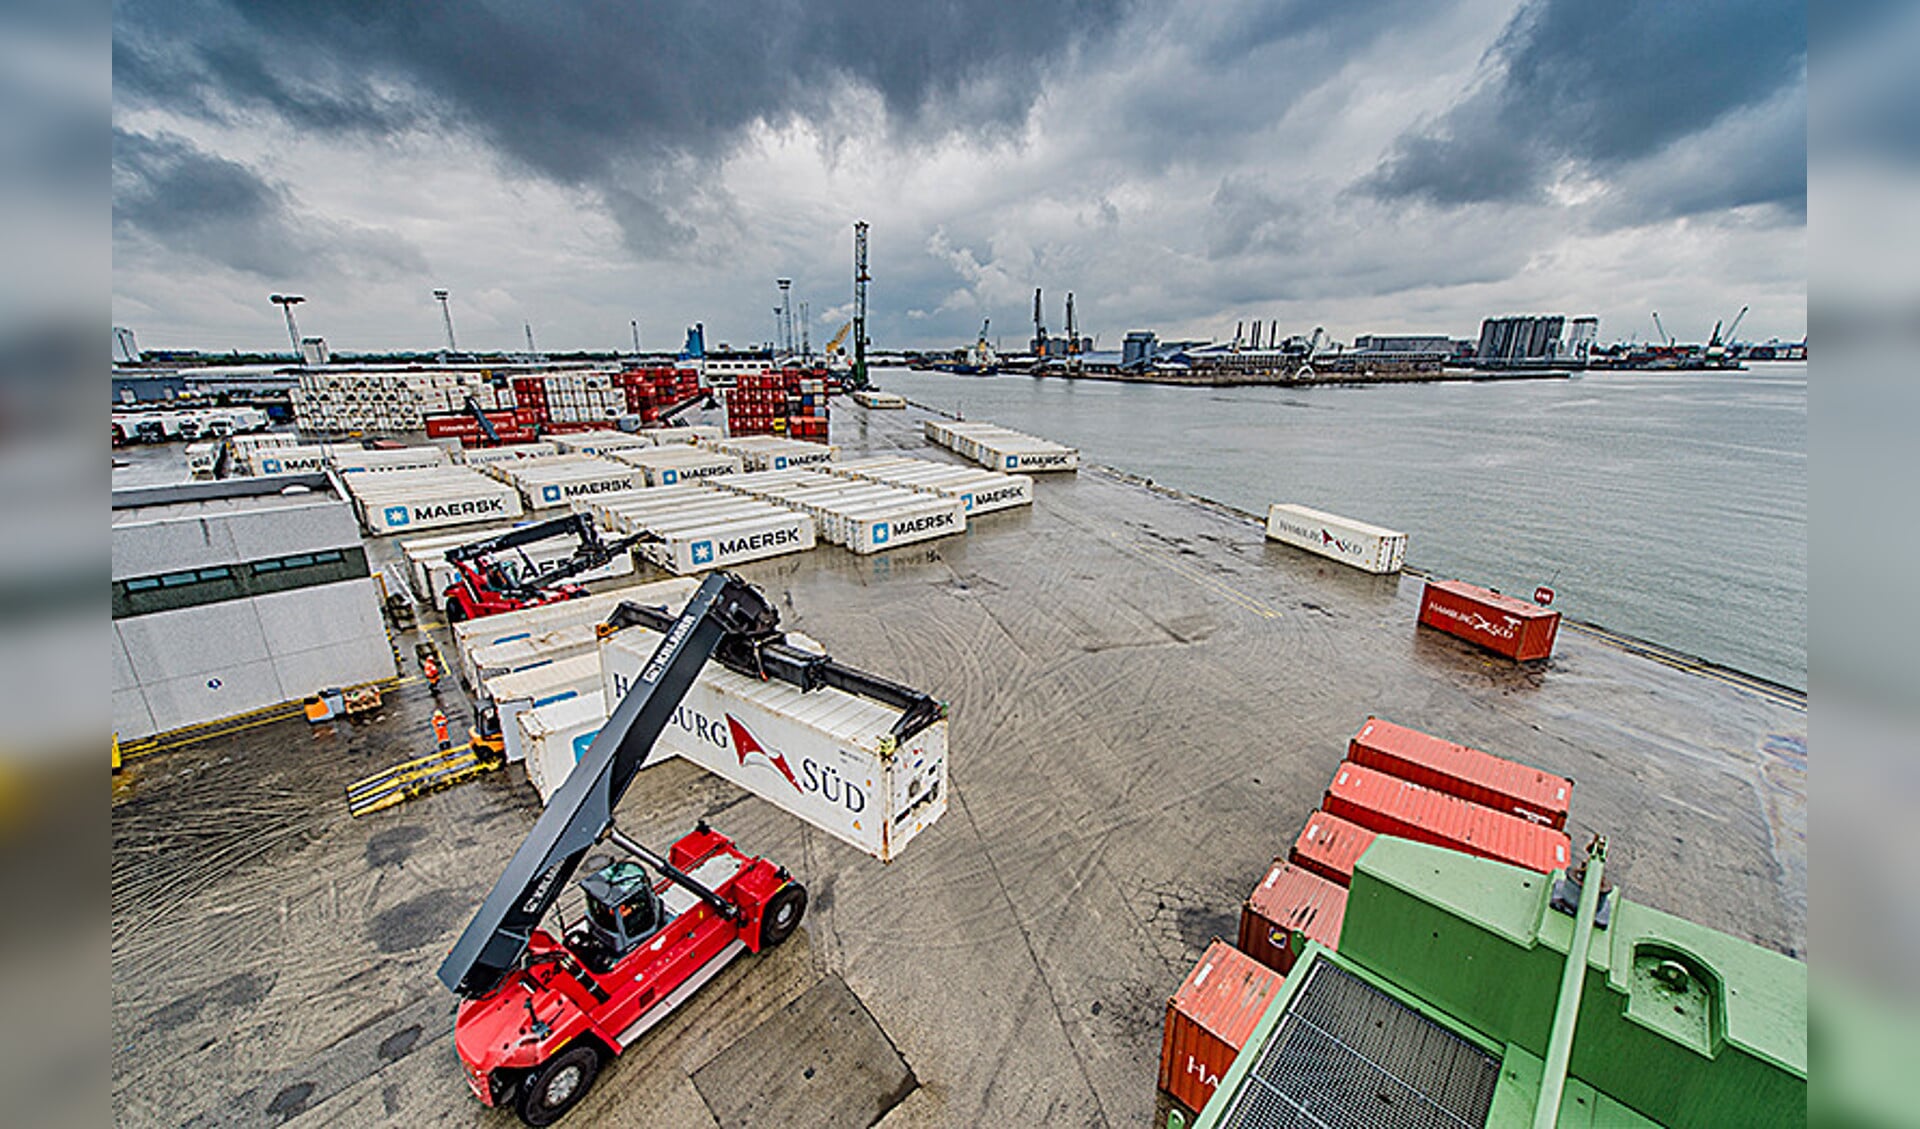 De haven van Antwerpen.